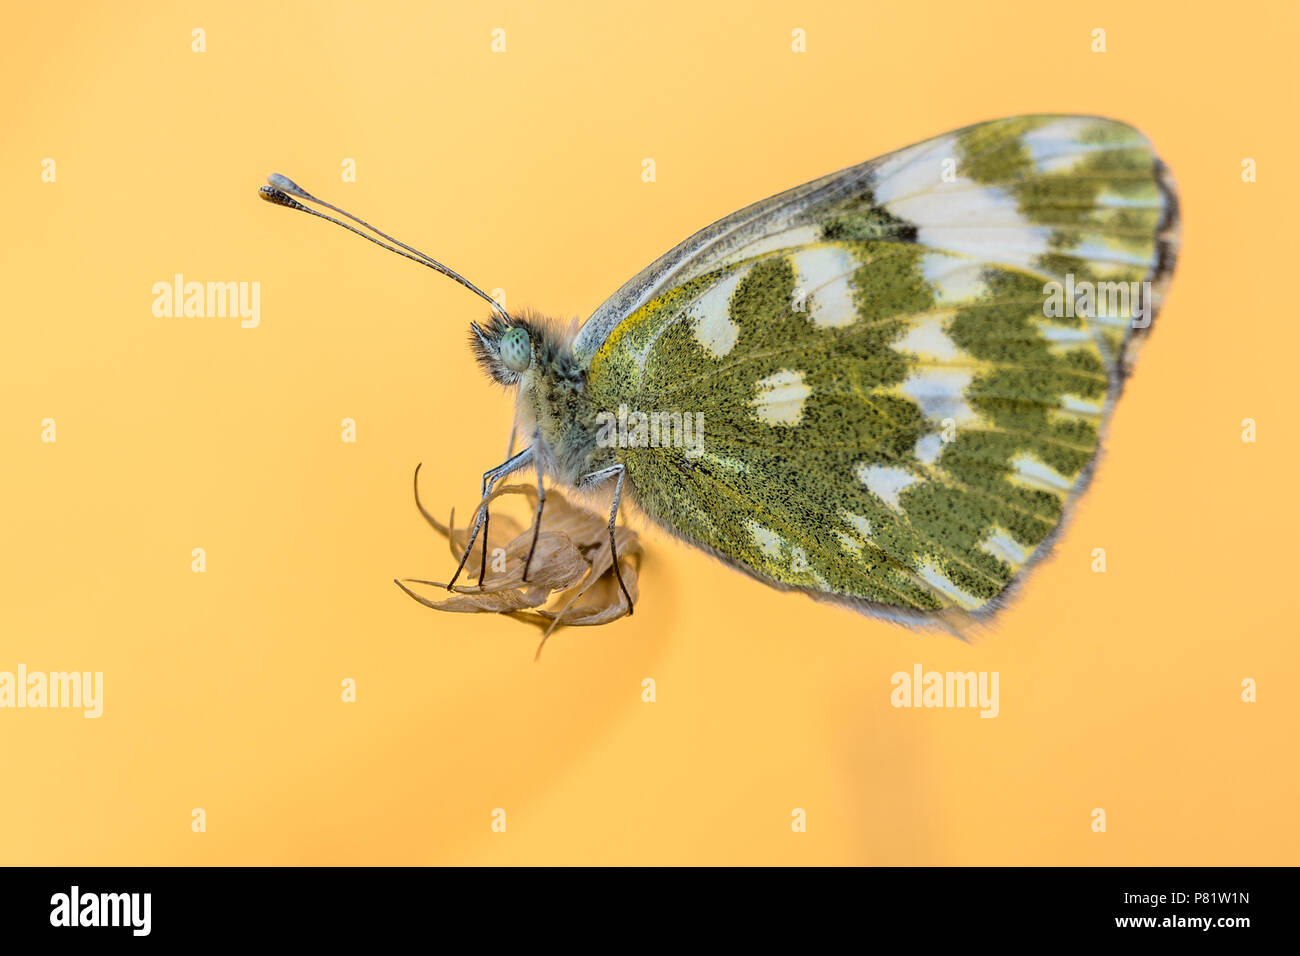 Bagno a farfalla bianco (Pontia daplidice) in appoggio sulla pianta come in bilico a metà in aria illuminato con sfondo arancione Foto Stock